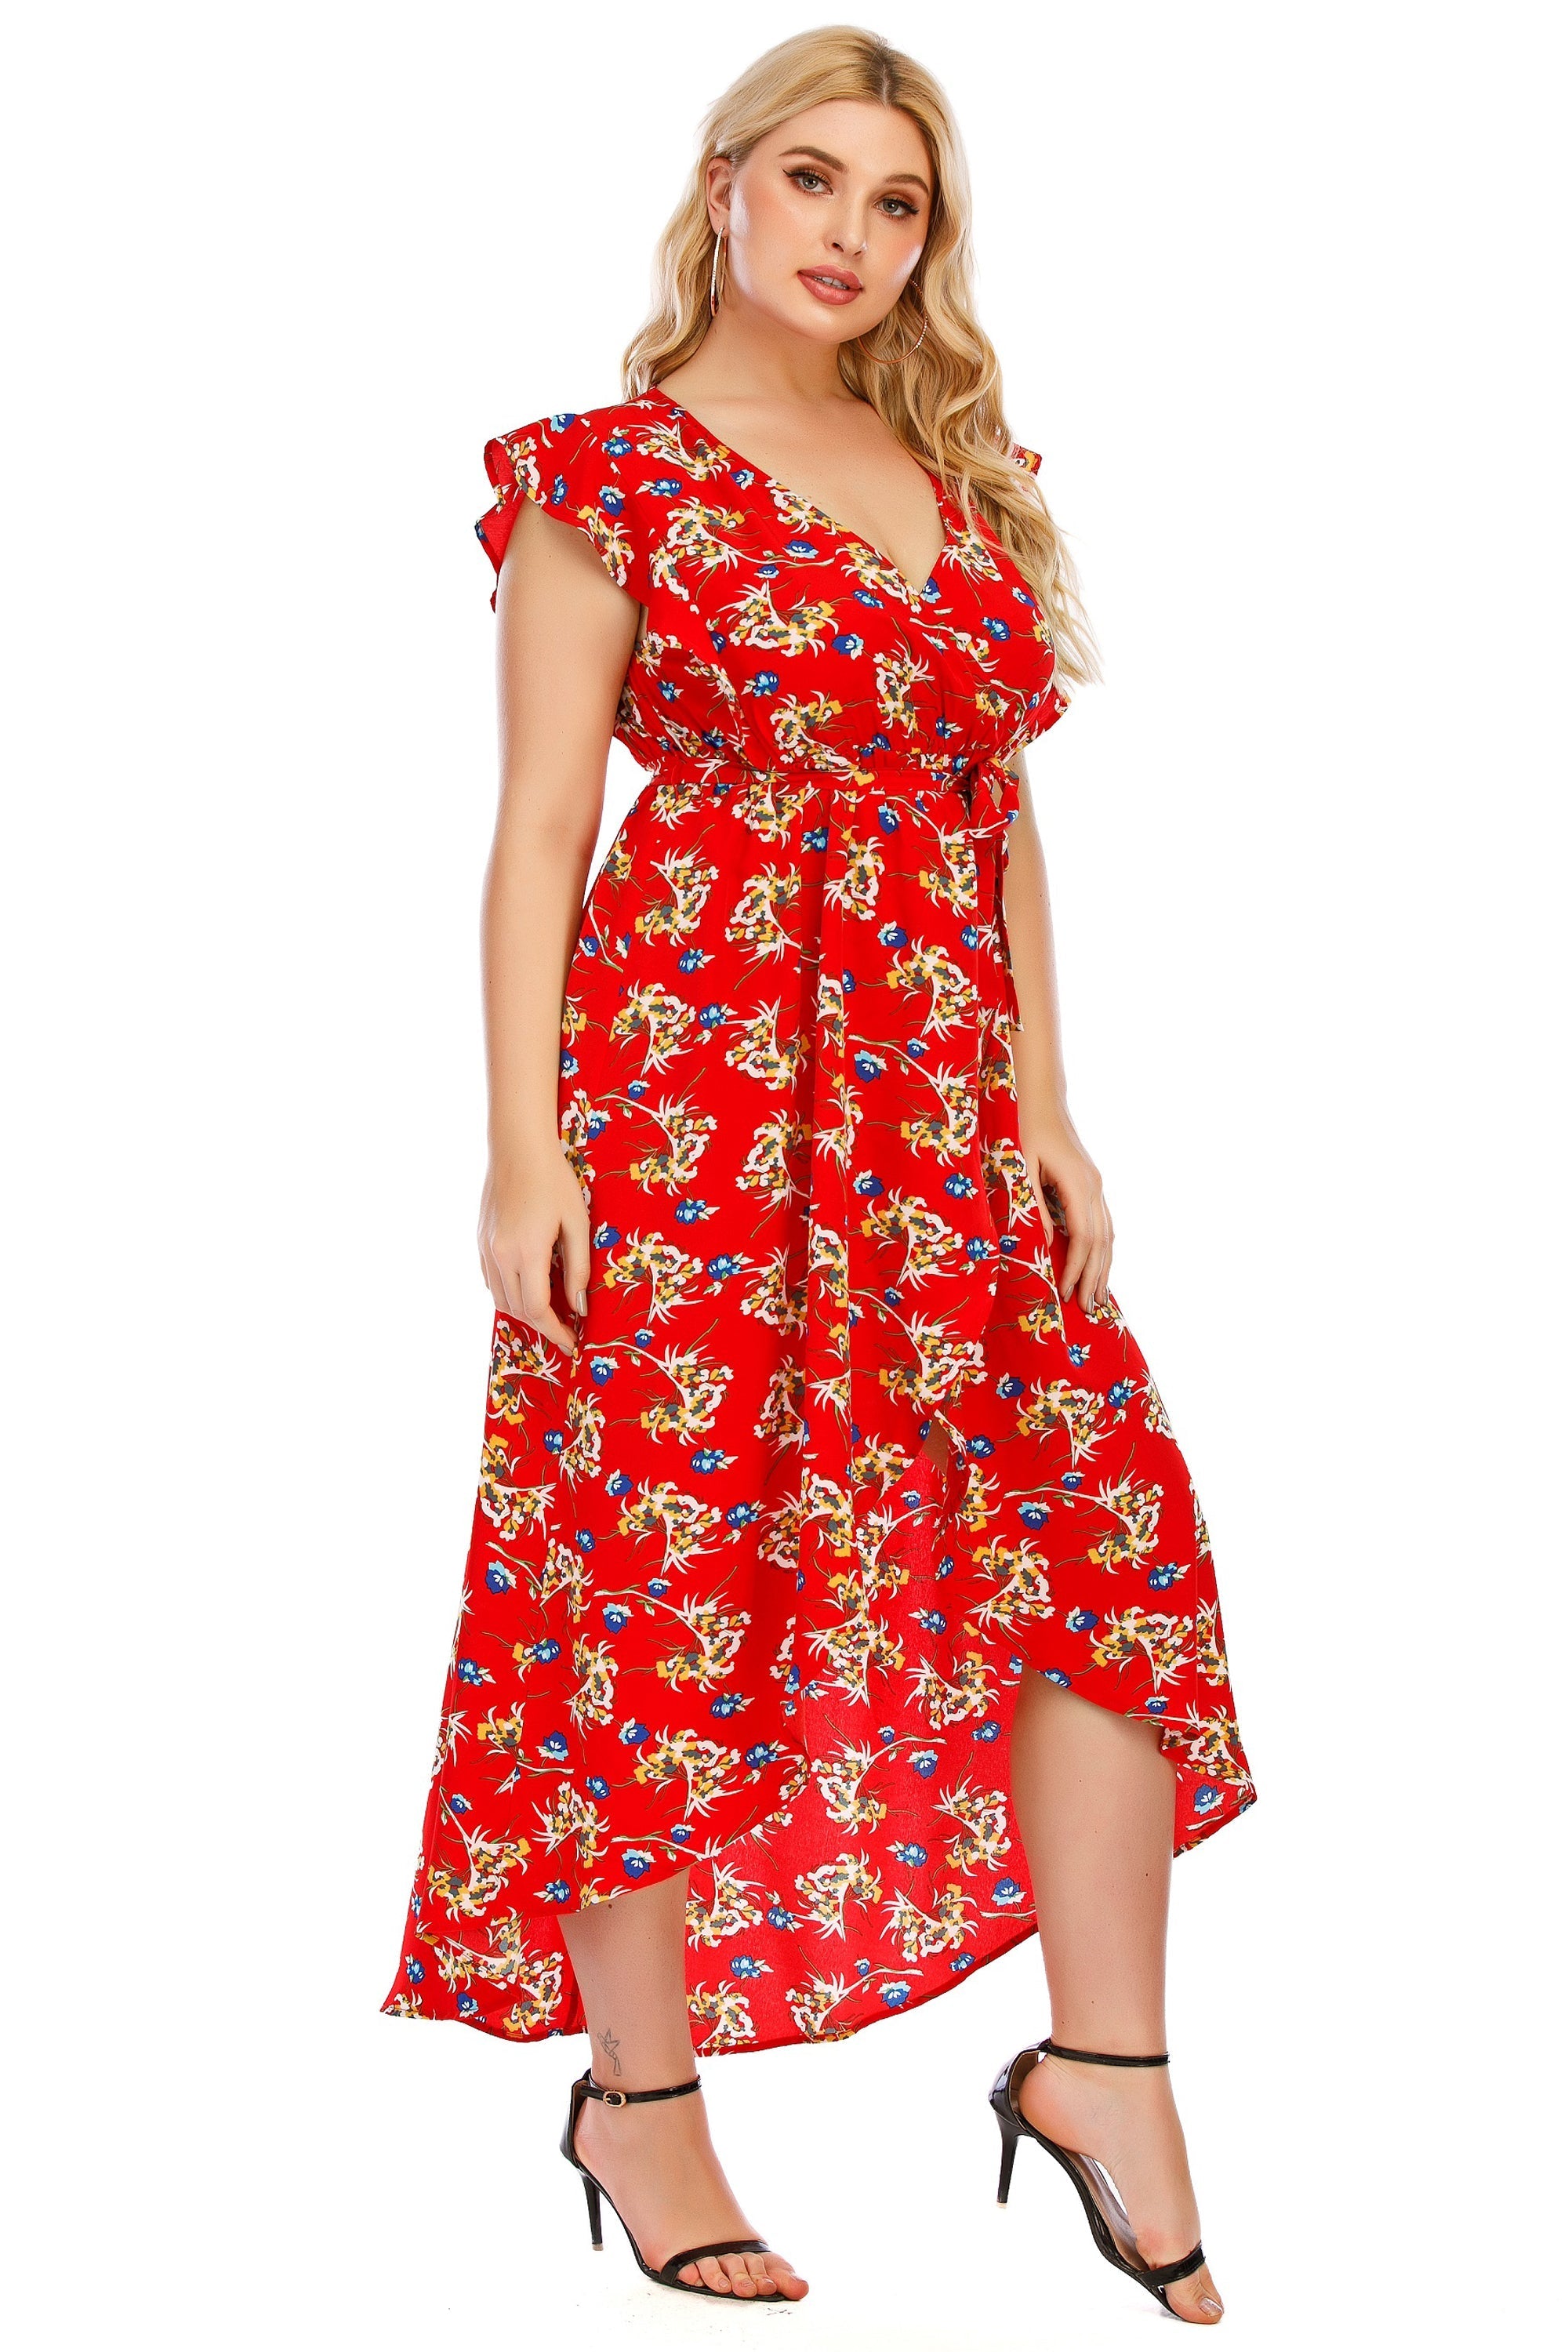 Women's Plus Size V neck Faux Wrap Floral Printed Ruffle Hi-Low Dress Sai Feel